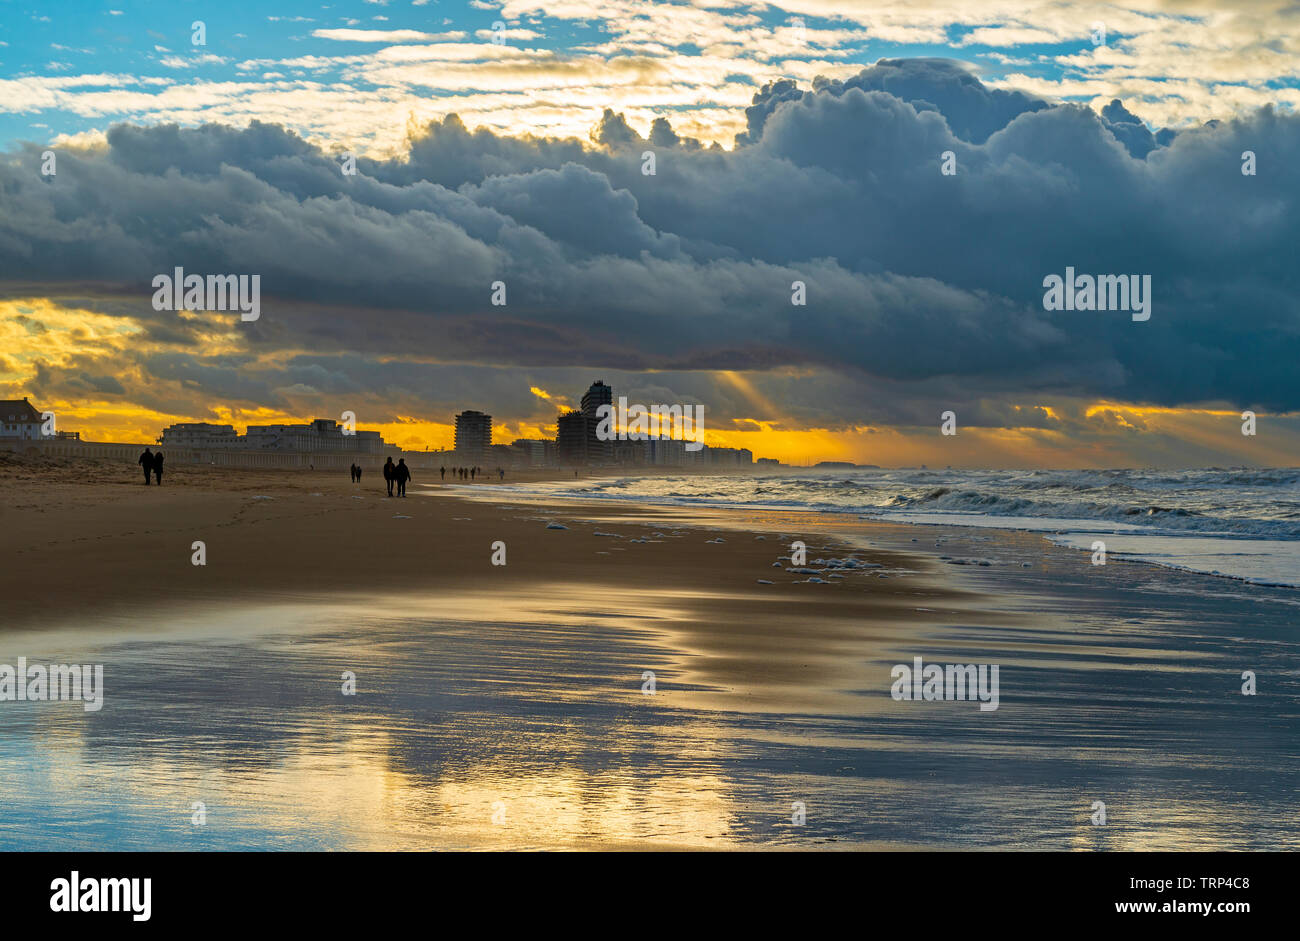 La silhouette di gente camminare sulla spiaggia del Mare del Nord della città di Oostende al tramonto, Fiandre Occidentali, Belgio. Foto Stock